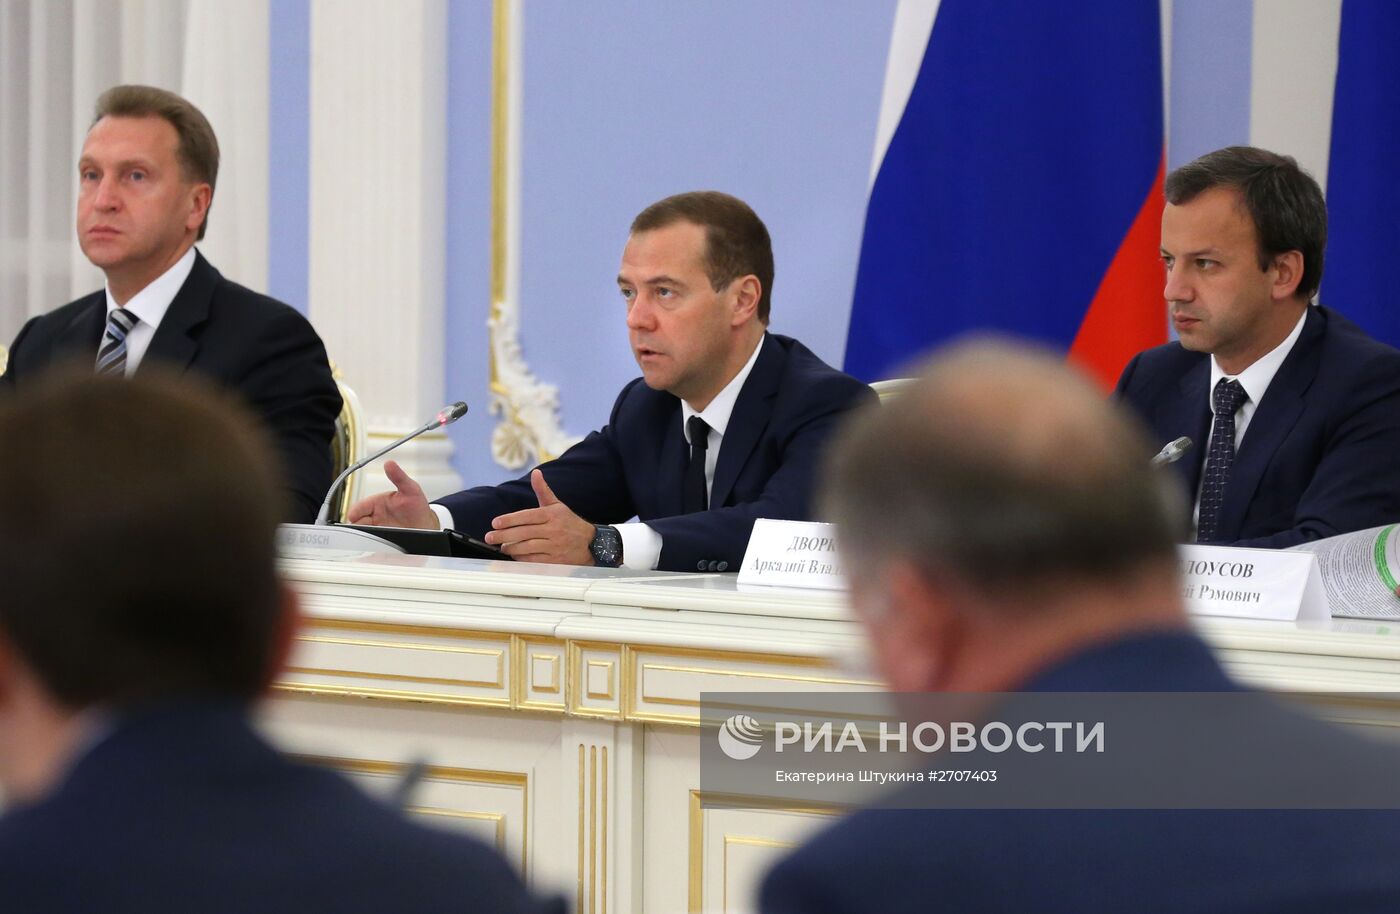 Премьер-министр РФ Д.Медведев провел совещание по повышению эффективности расходов госкомпаний